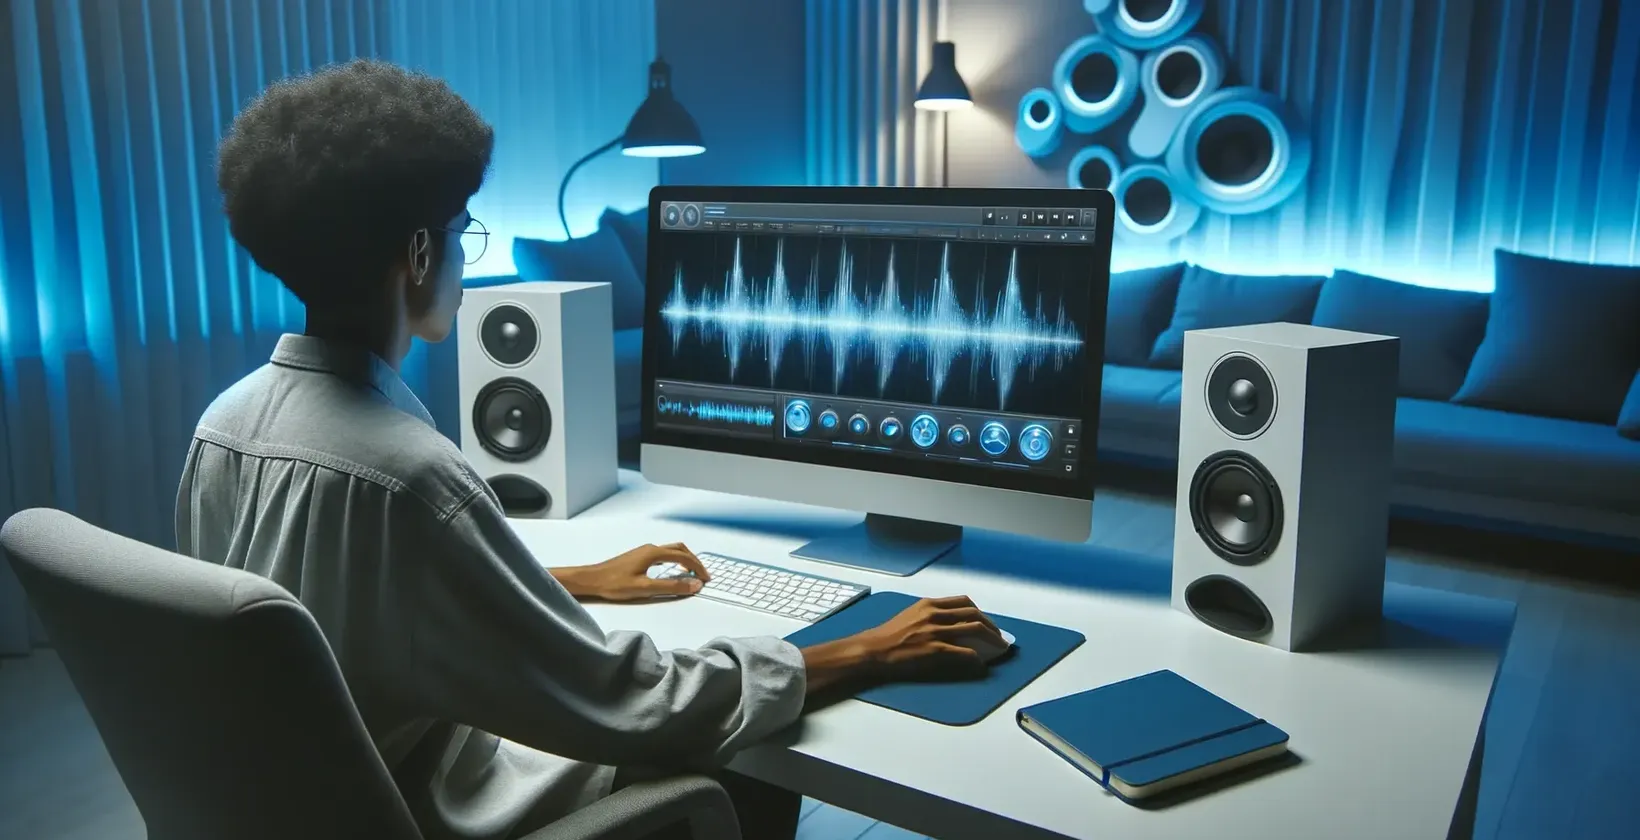 Pessoa trabalhando em um computador adicionando texto a um vídeo de corte em um ambiente de estúdio moderno com alto-falantes